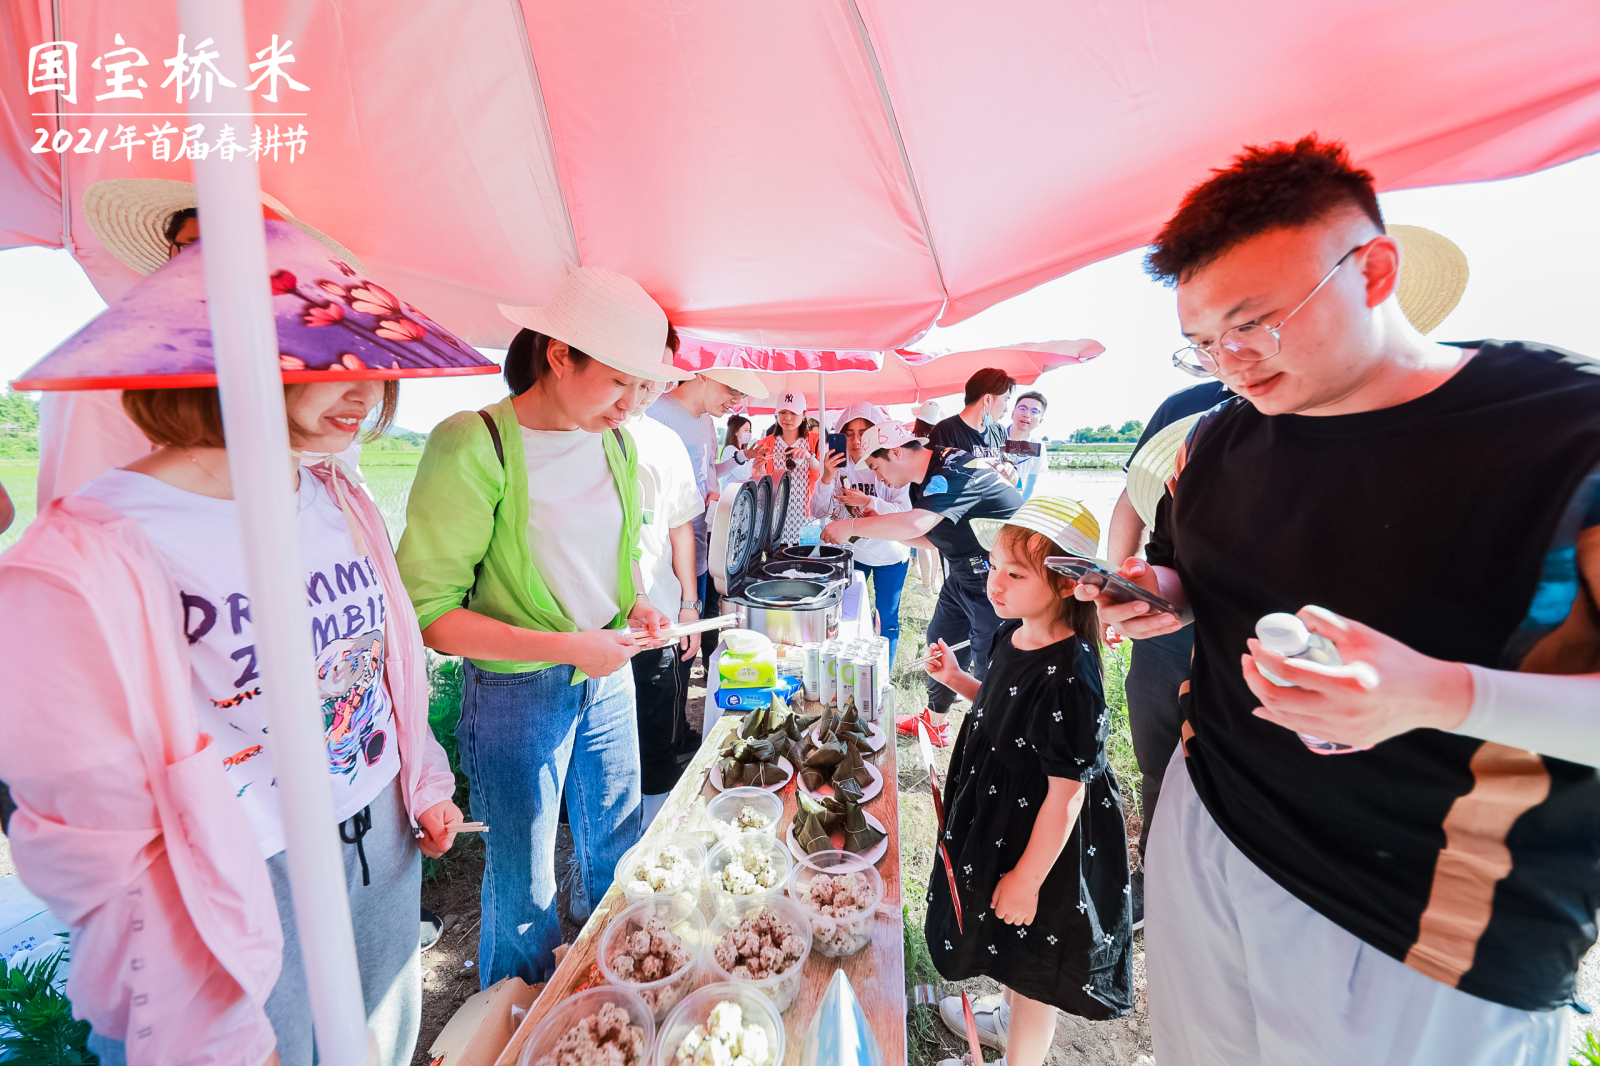 全省人民都爱吃的桥米品牌 成功举办插秧体验活动